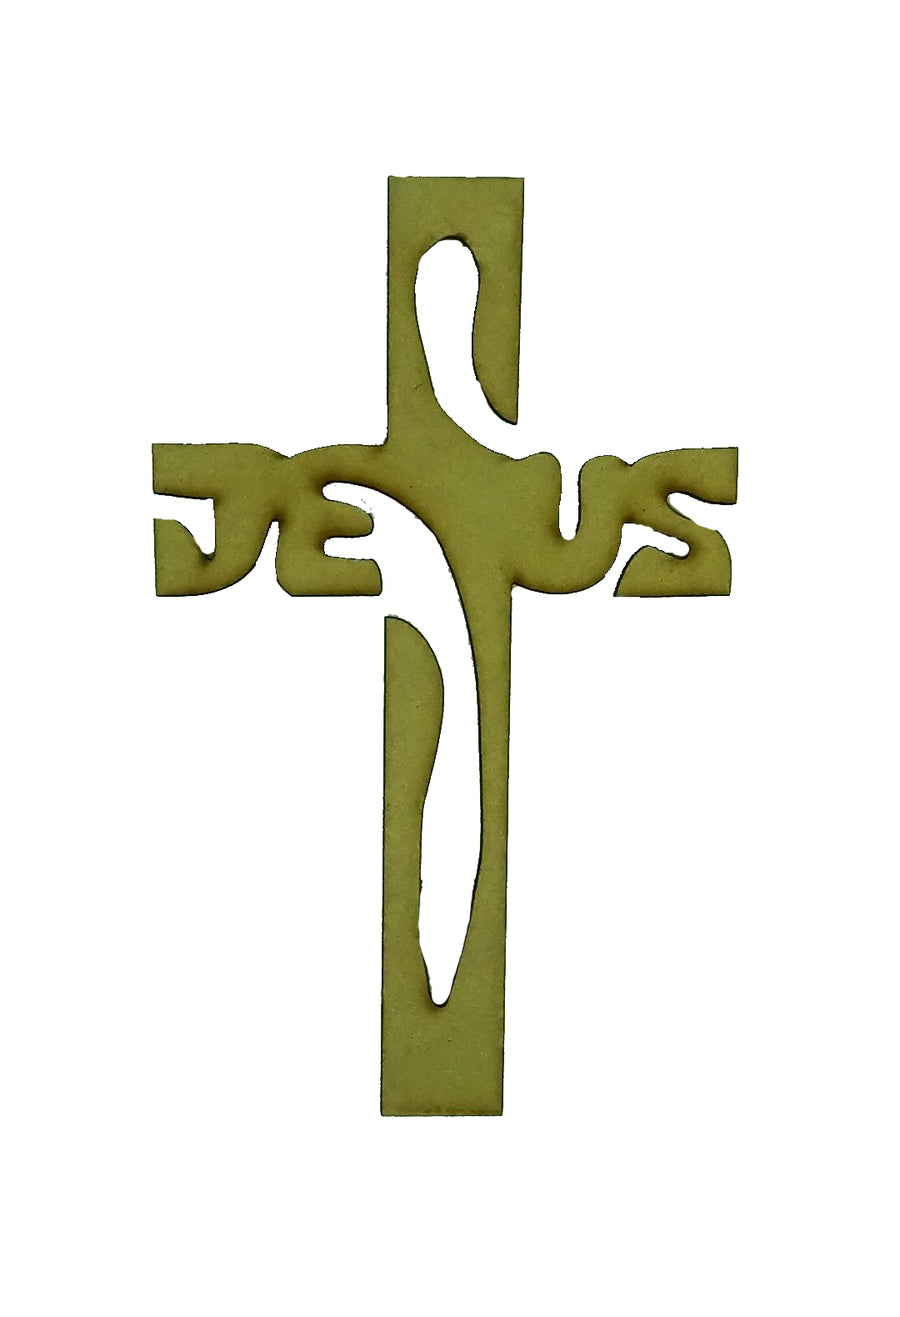 Cruz deus de madera